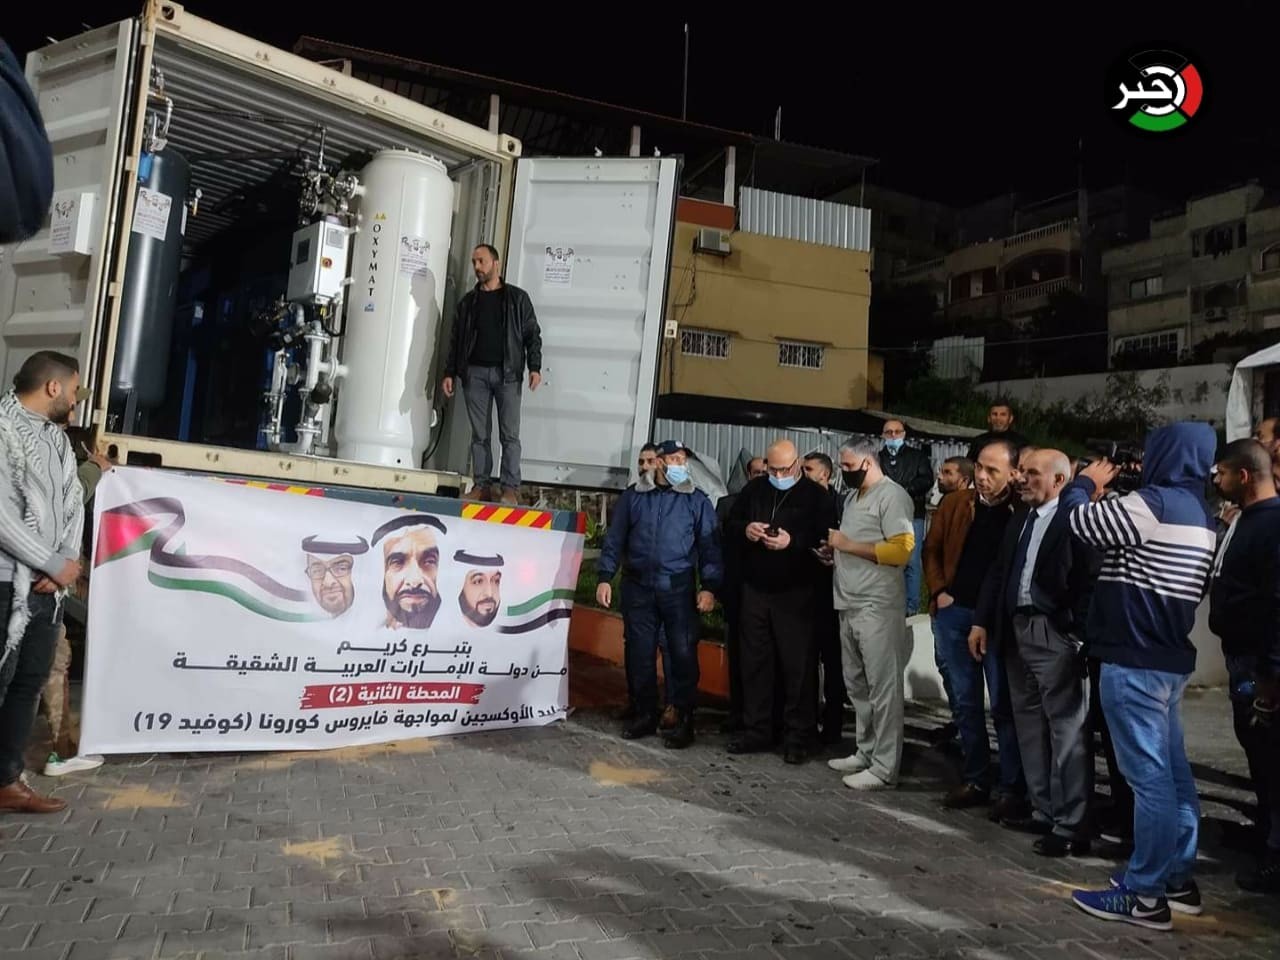 شاهد.. محطة "أكسجين 2" تصل قطاع غزة عبر معبر كرم أبو سالم بجهود النائب دحلان